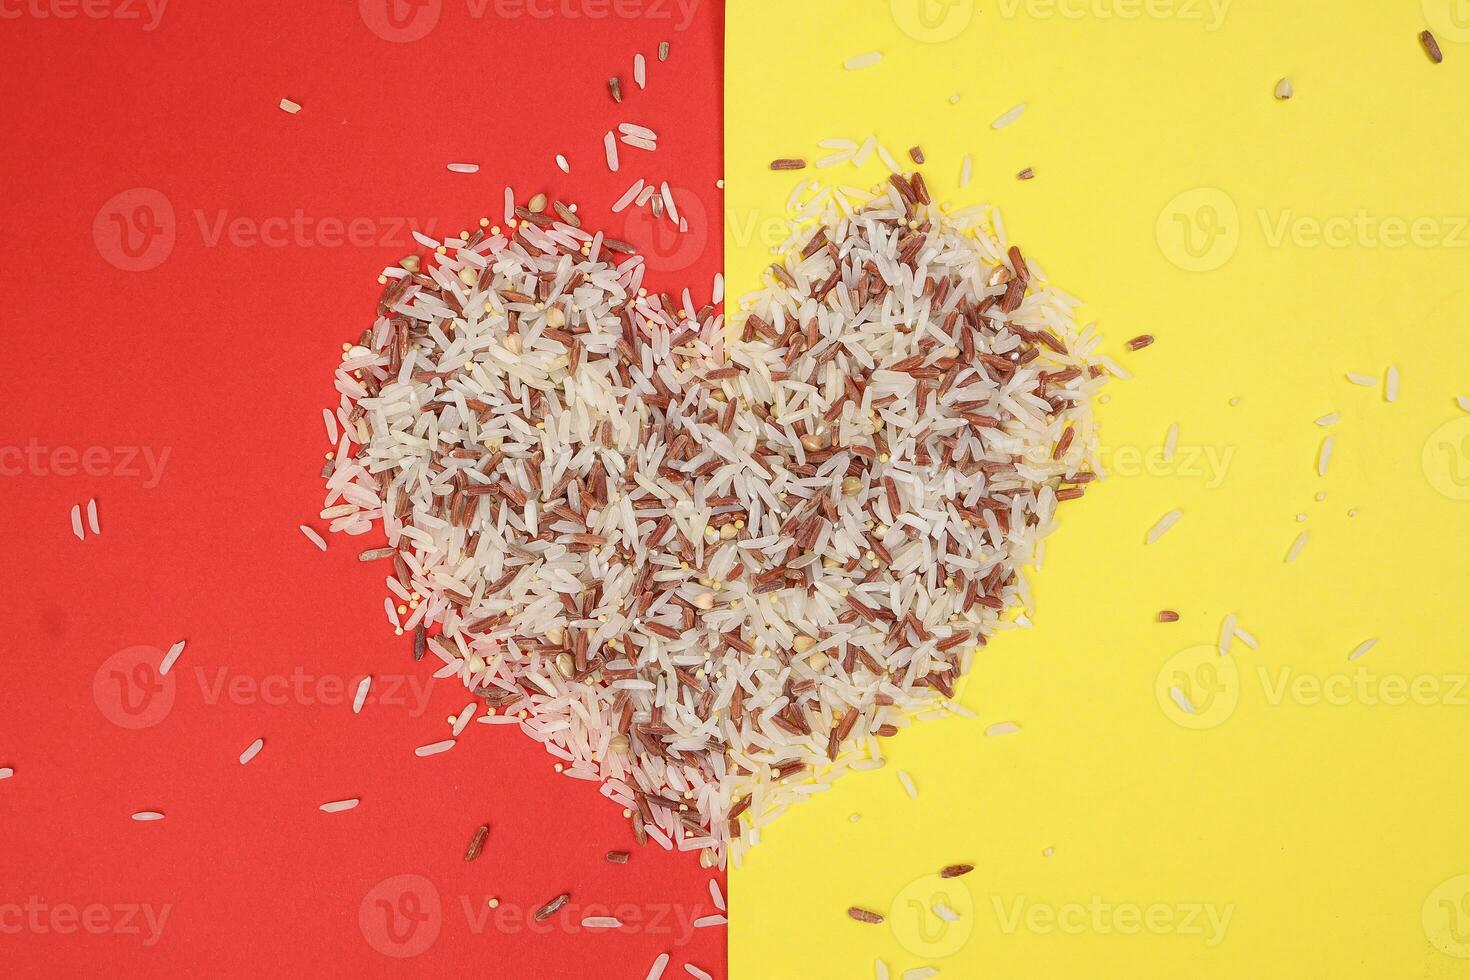 mezclado bajo glucémico índice sano arroz grano basmati mijo alforfón rojo arroz ciervo forma en rojo amarillo antecedentes foto